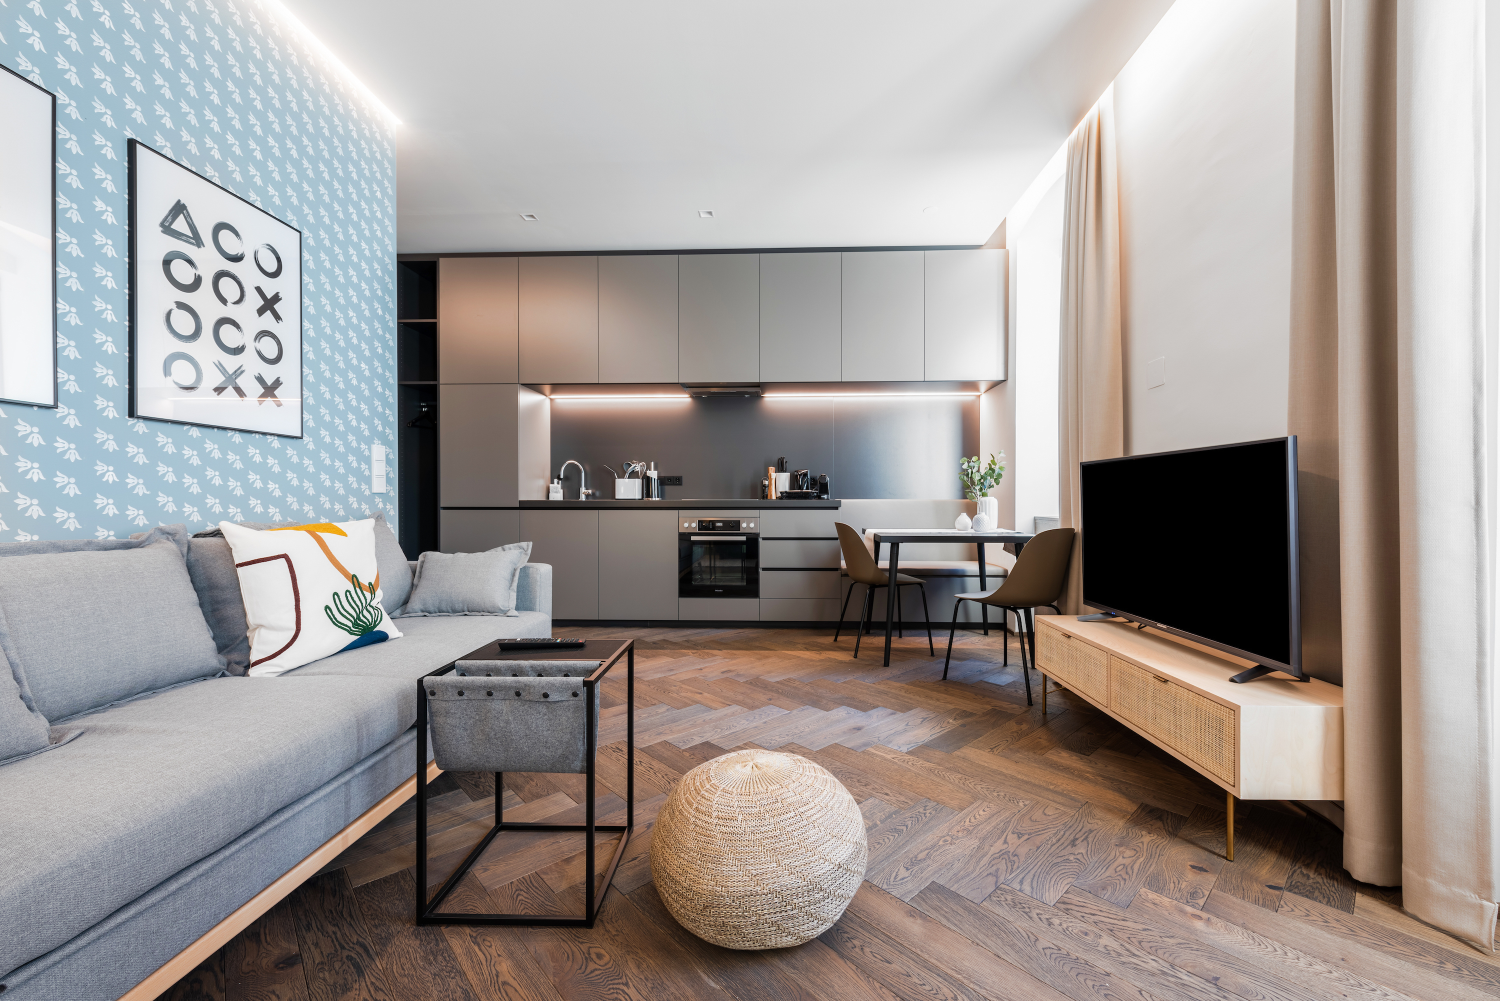 Das Münchner Startup Limehome mietet Wohnungen an und richtet diese als Apartments zur kurz- und langfristigen Miete ein.Quelle: Limehome GmbH.